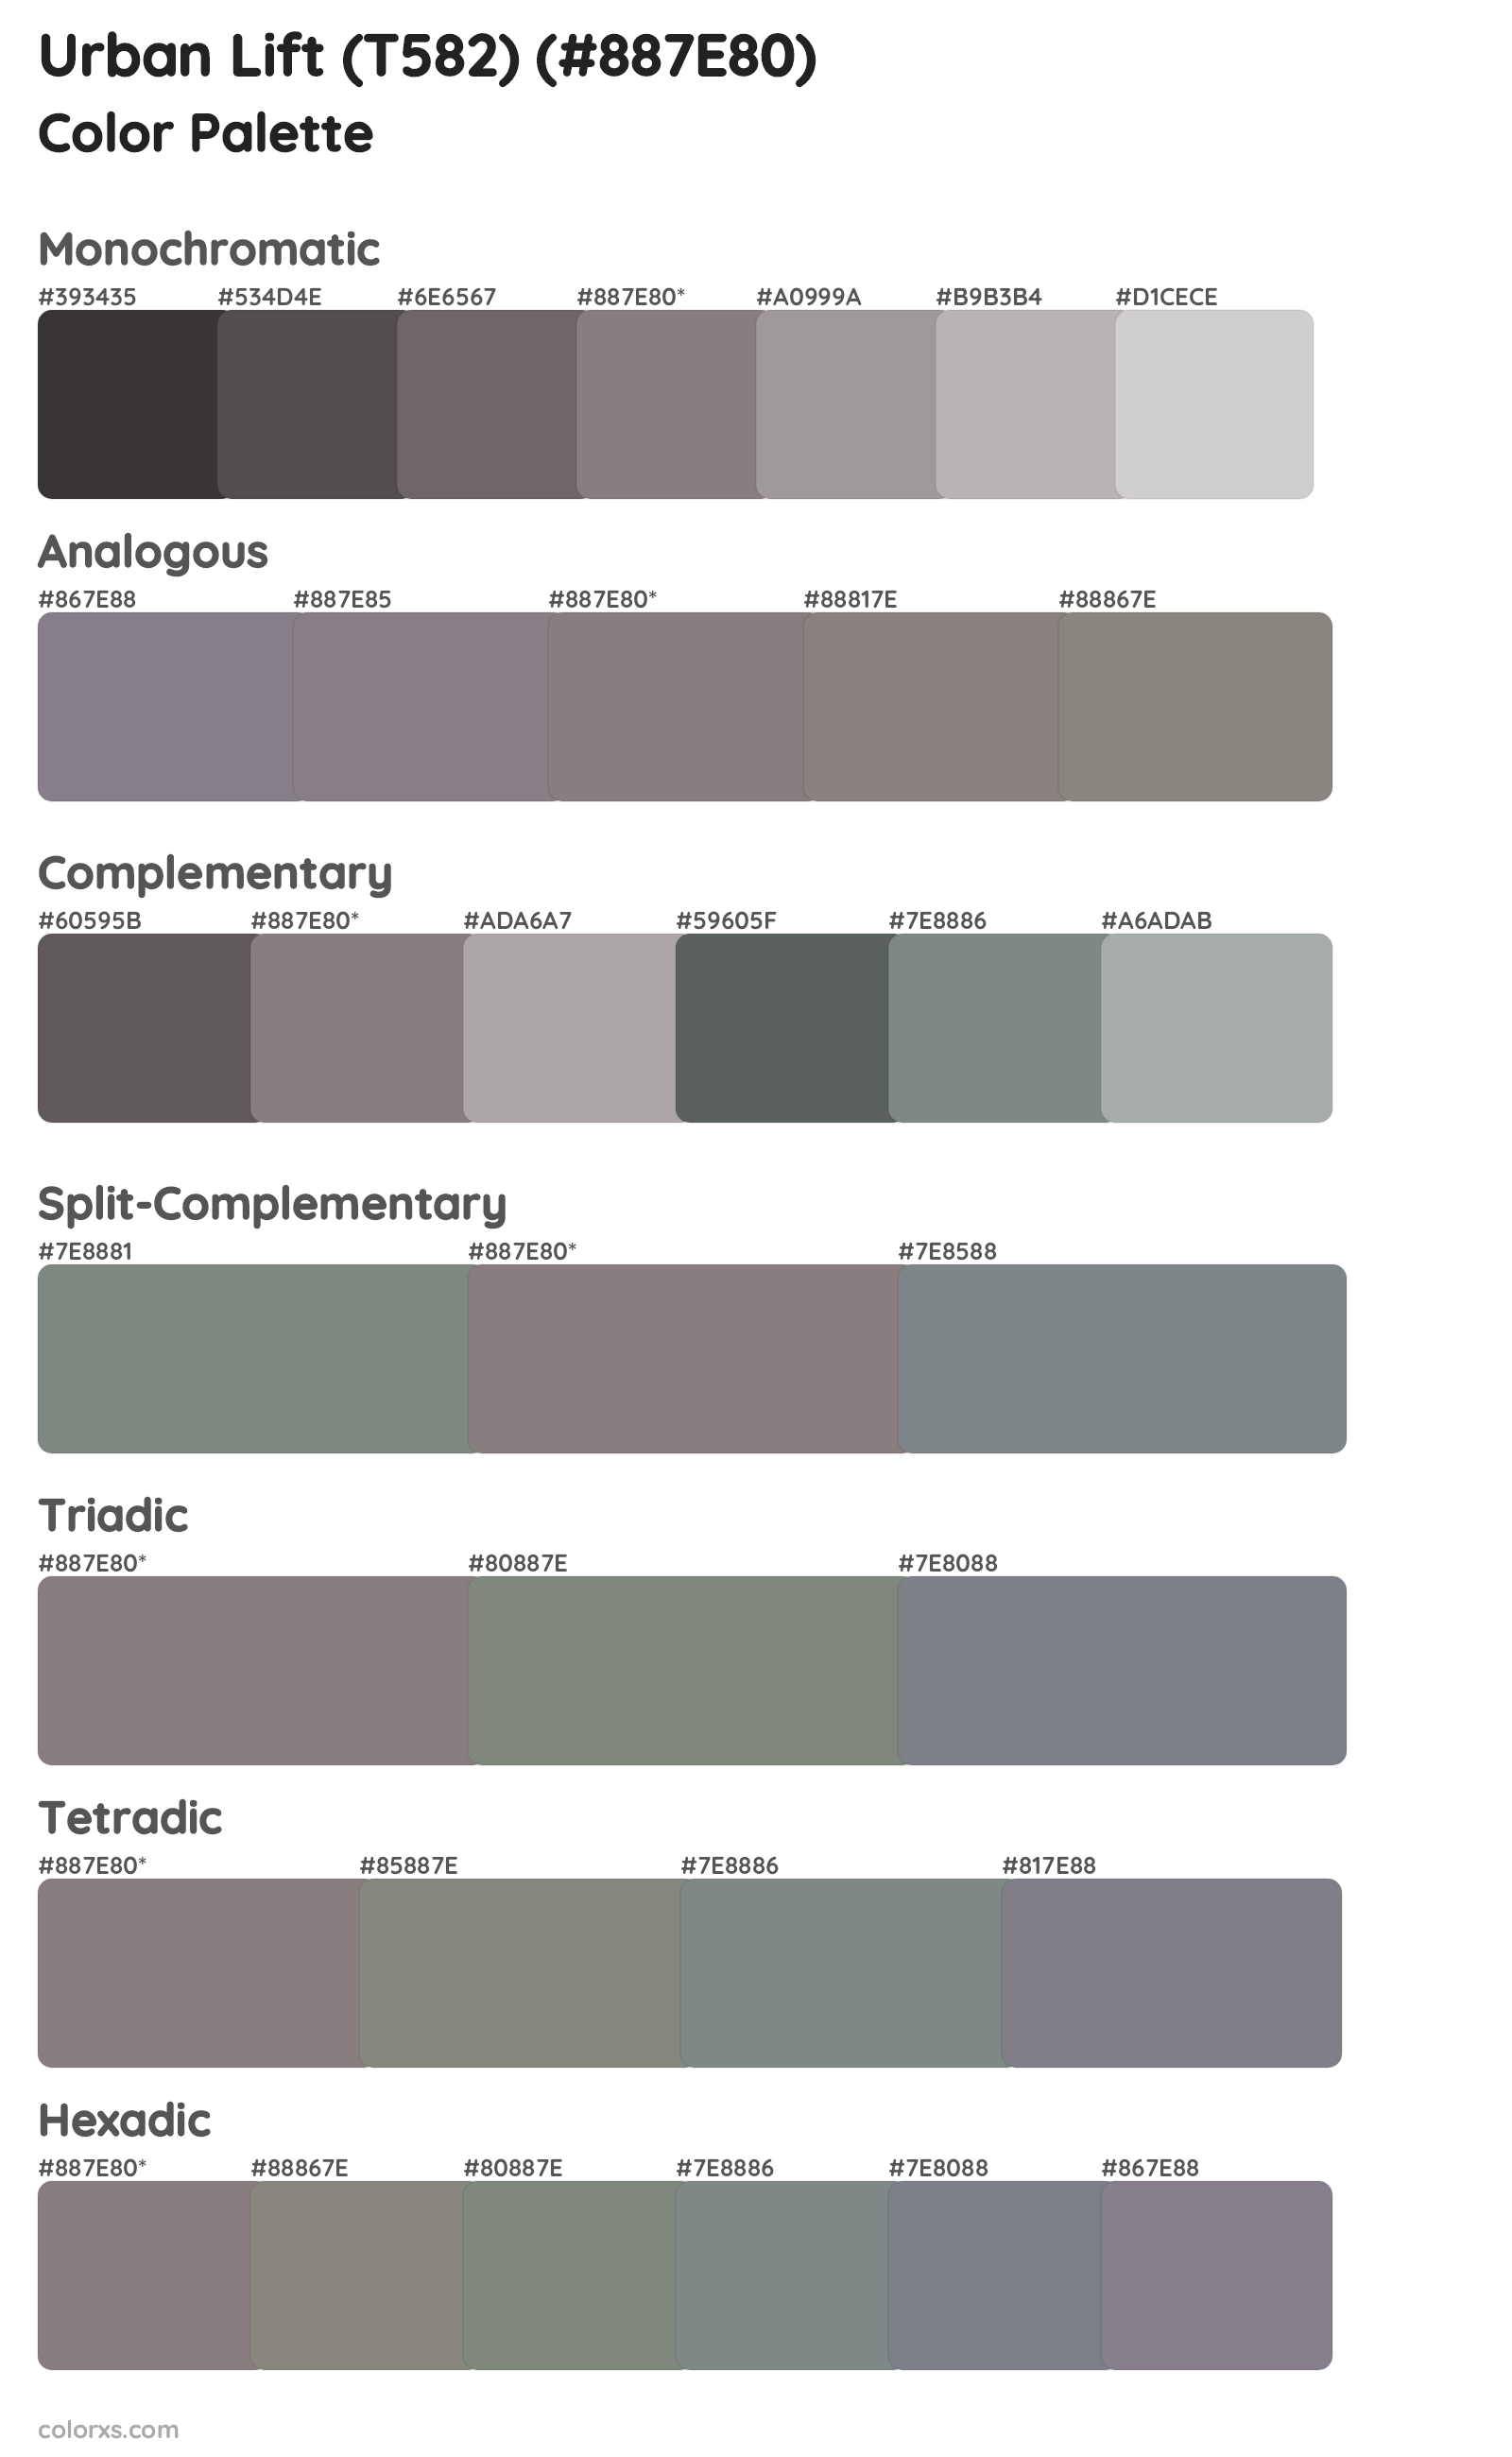 Urban Lift (T582) Color Scheme Palettes